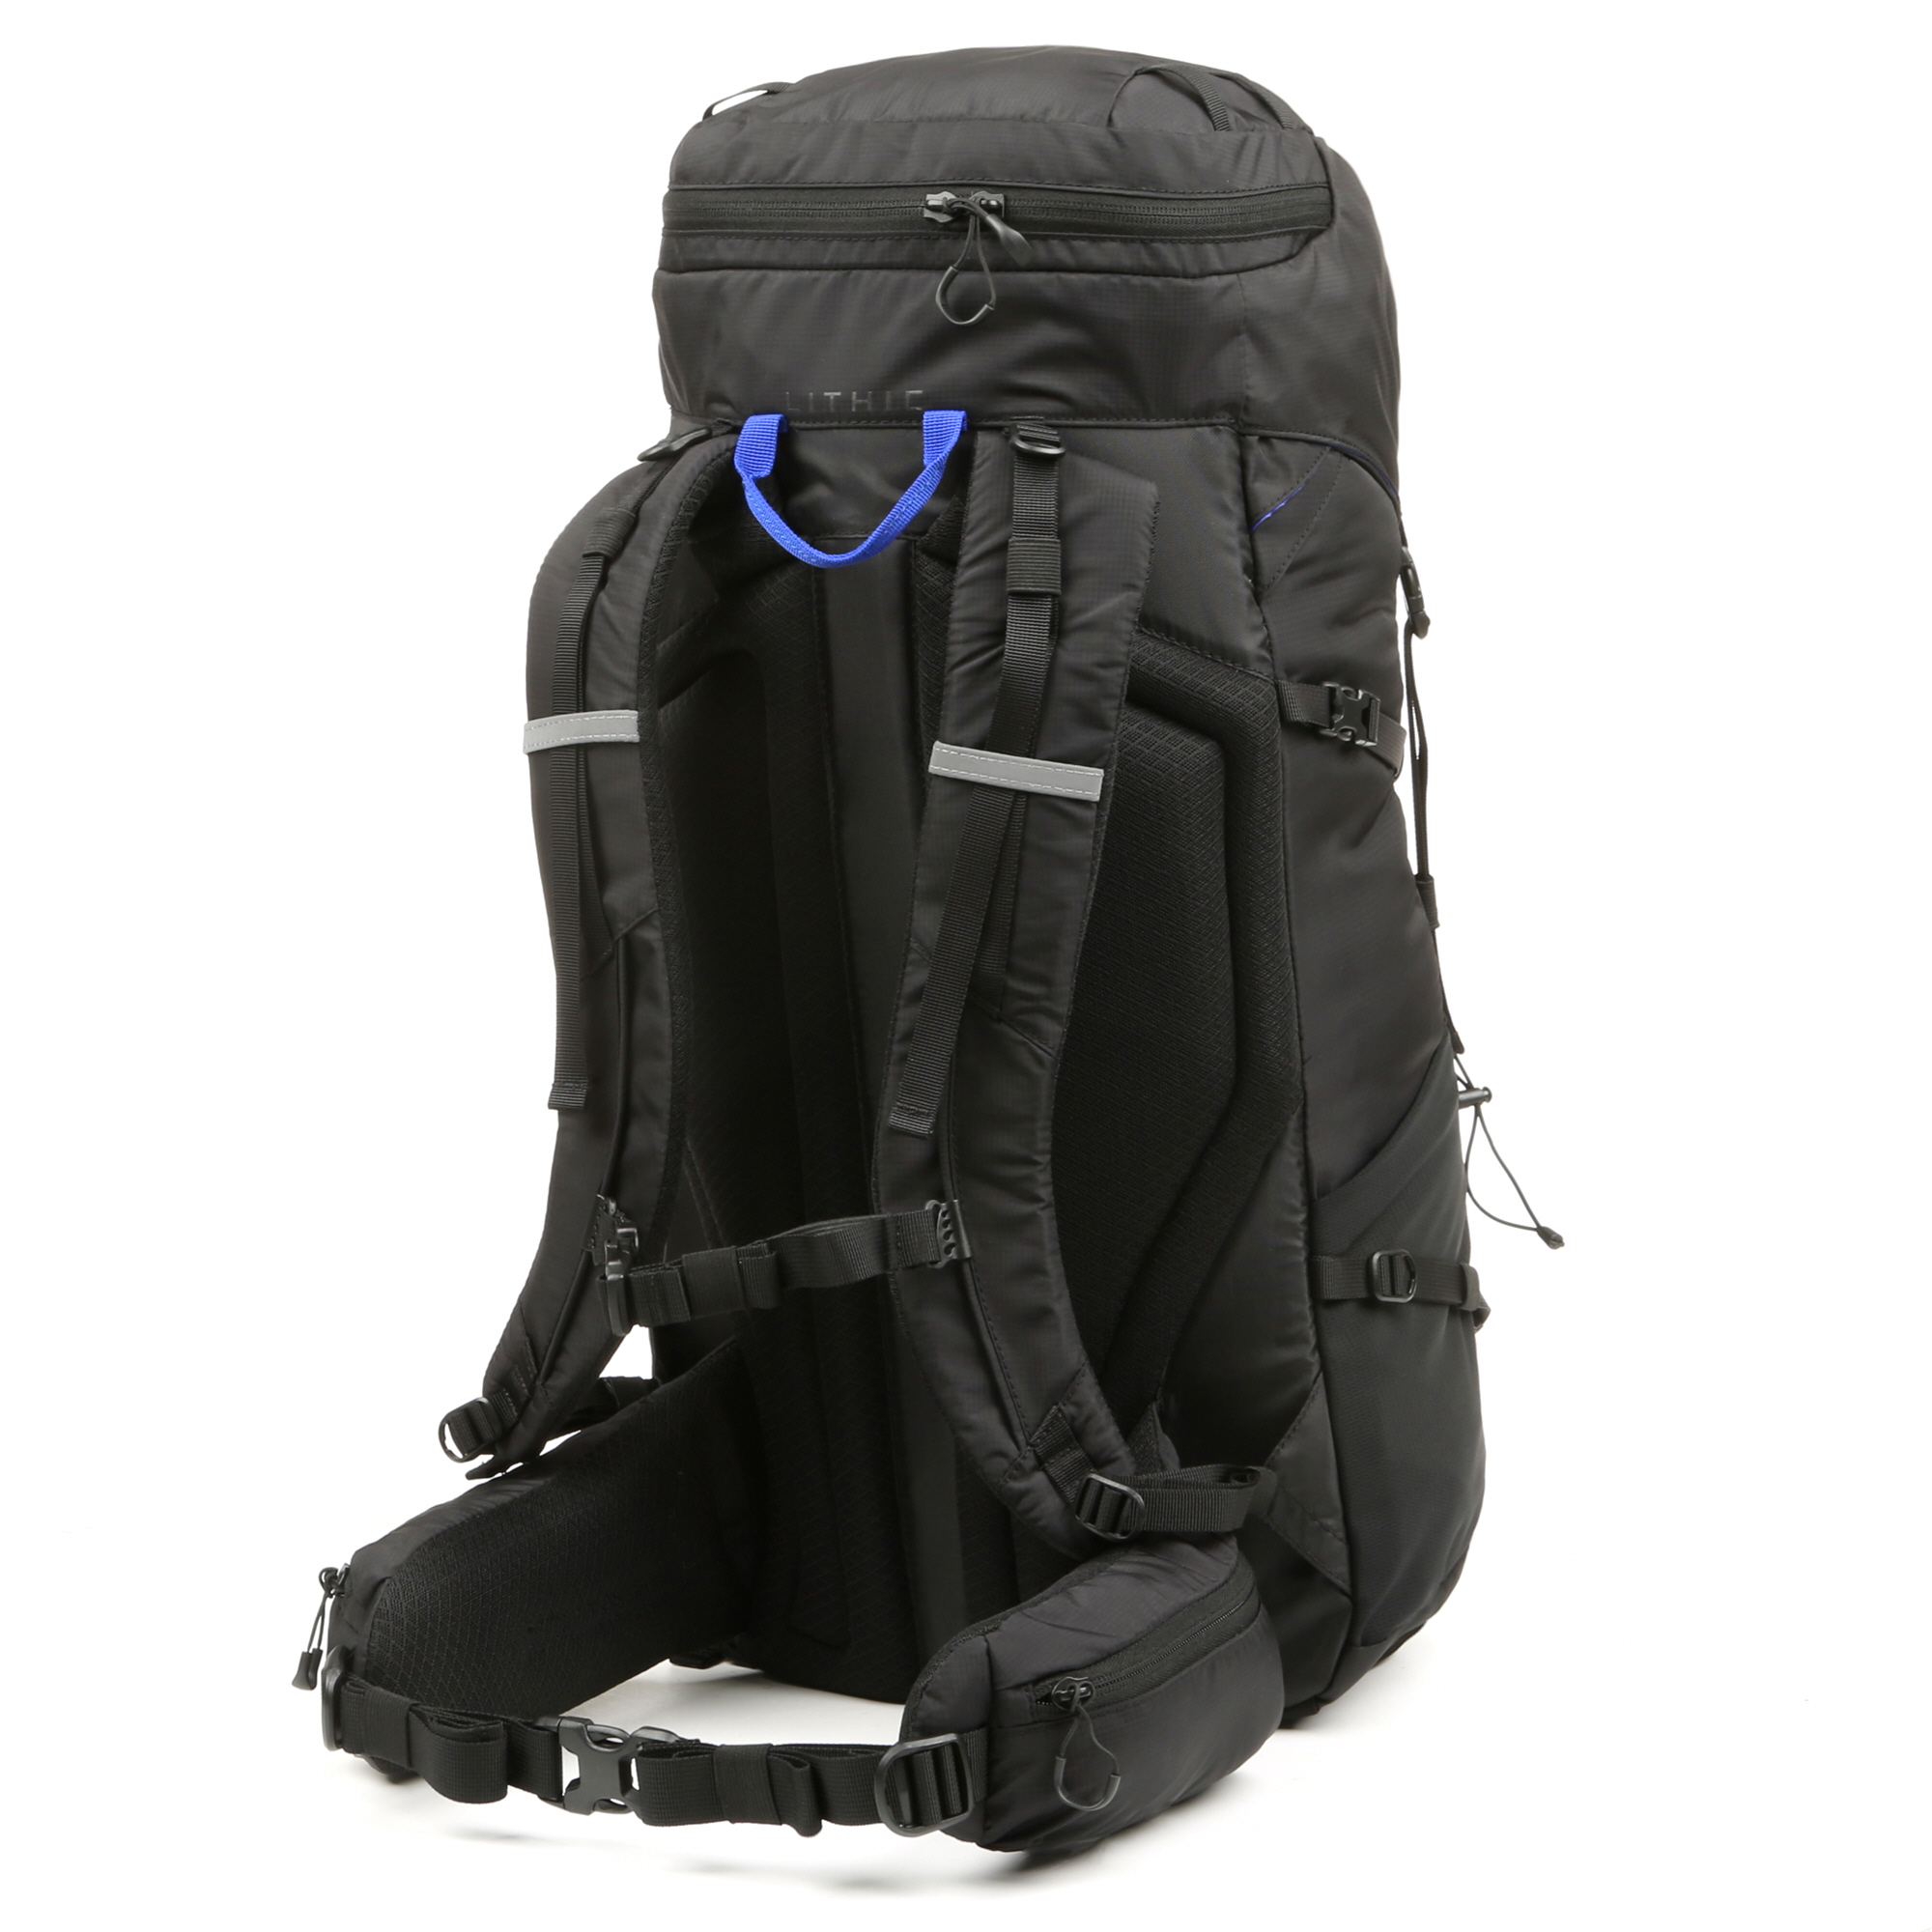 Lithic 40 Ltr Adult Hiking Backpack, Unisex, Black - Walmart.com